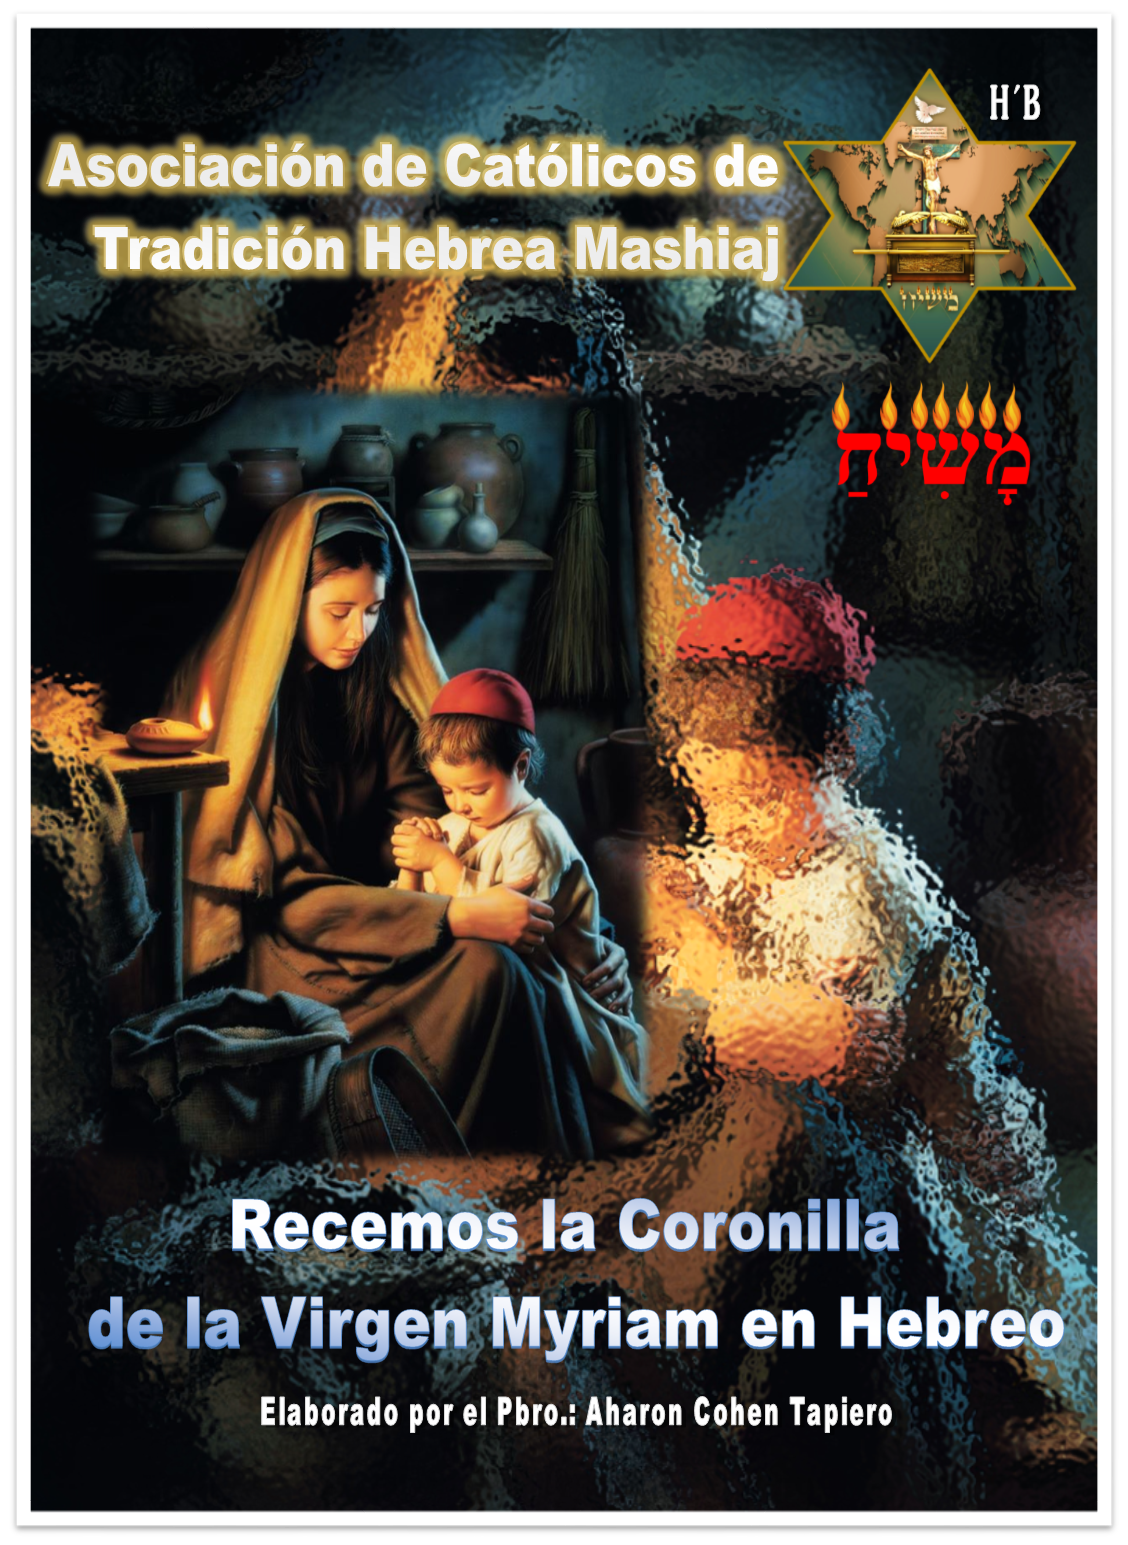 CORONILLA DE LA VIRGEN EN HEBREO